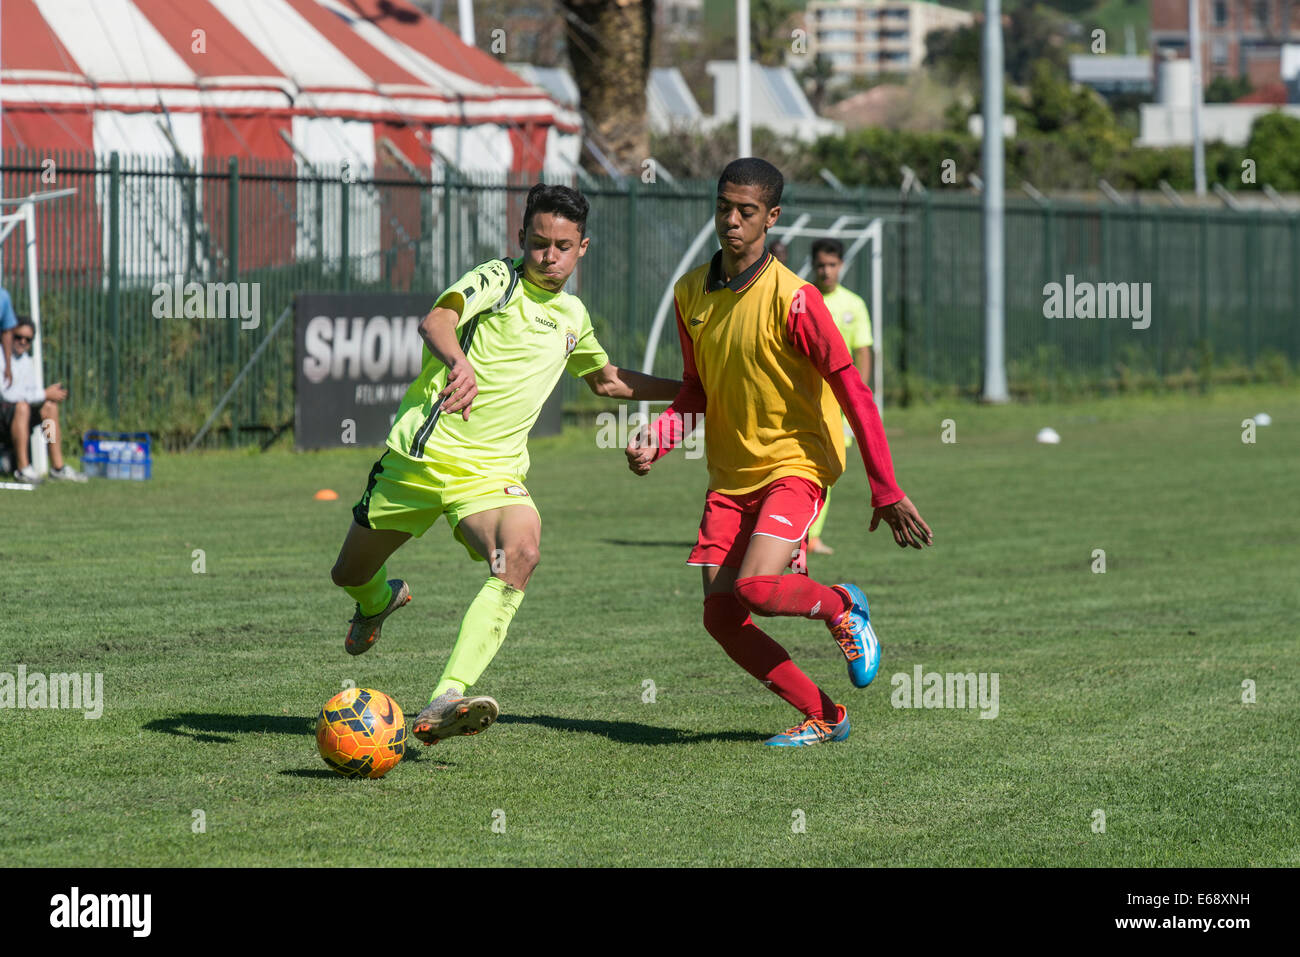 Joueurs en match de football des moins de 15 équipes de jeunes, Le Cap, Afrique du Sud Banque D'Images